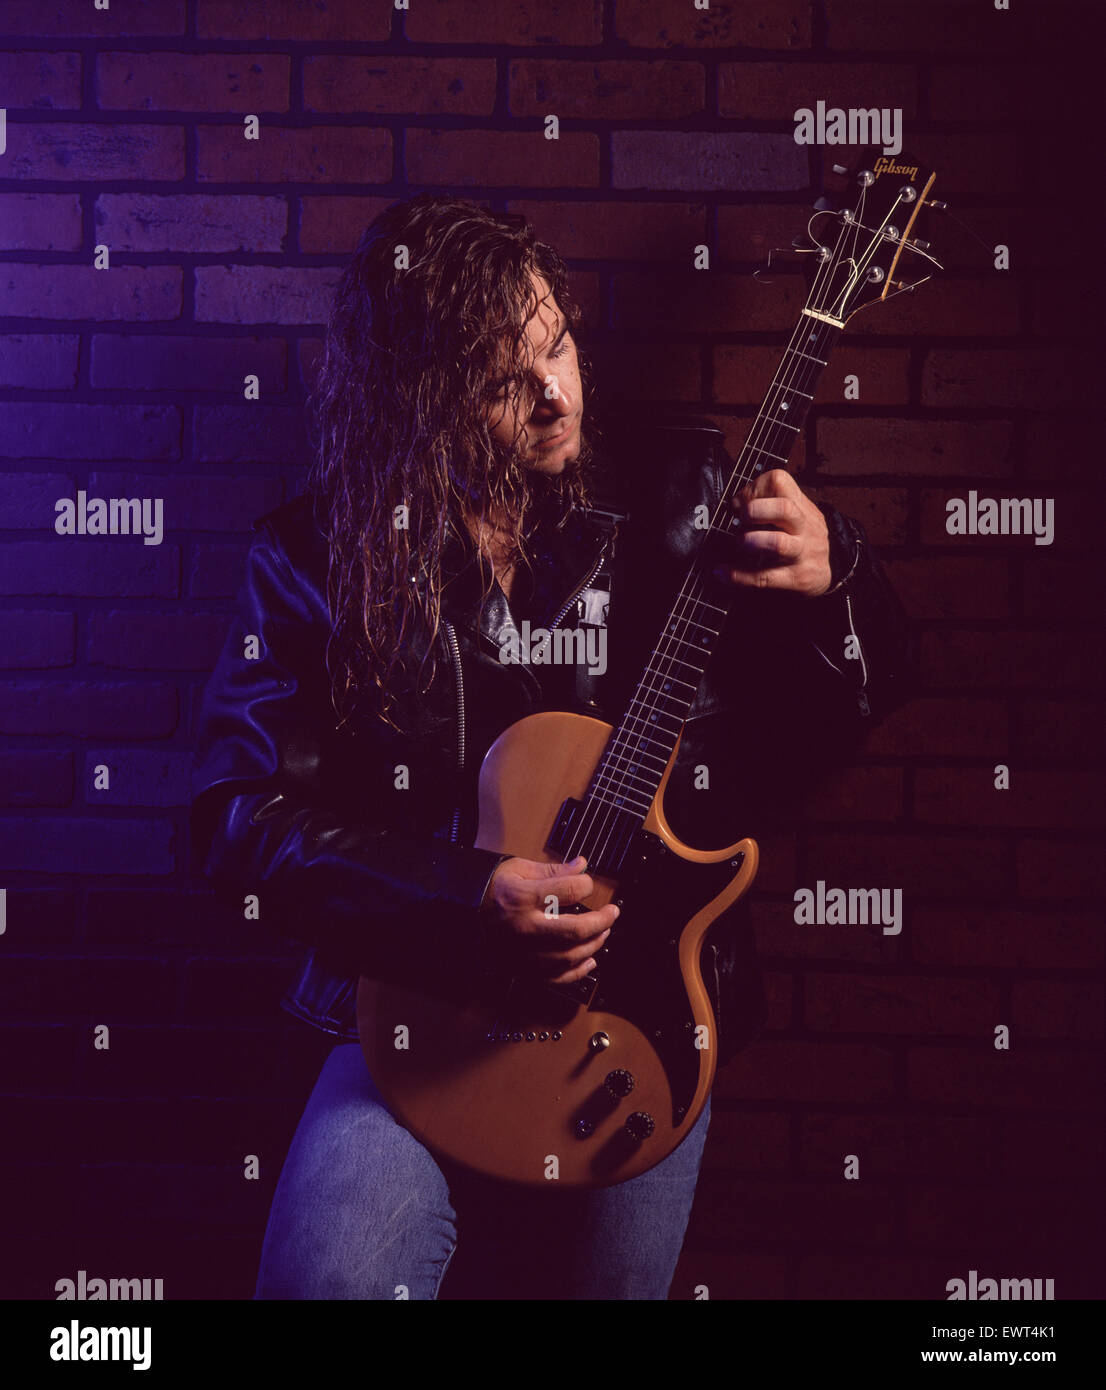 Guitariste rock avec de longs cheveux blonds, portant une veste en cuir, jouant de la guitare électrique contre un mur de briques. Banque D'Images